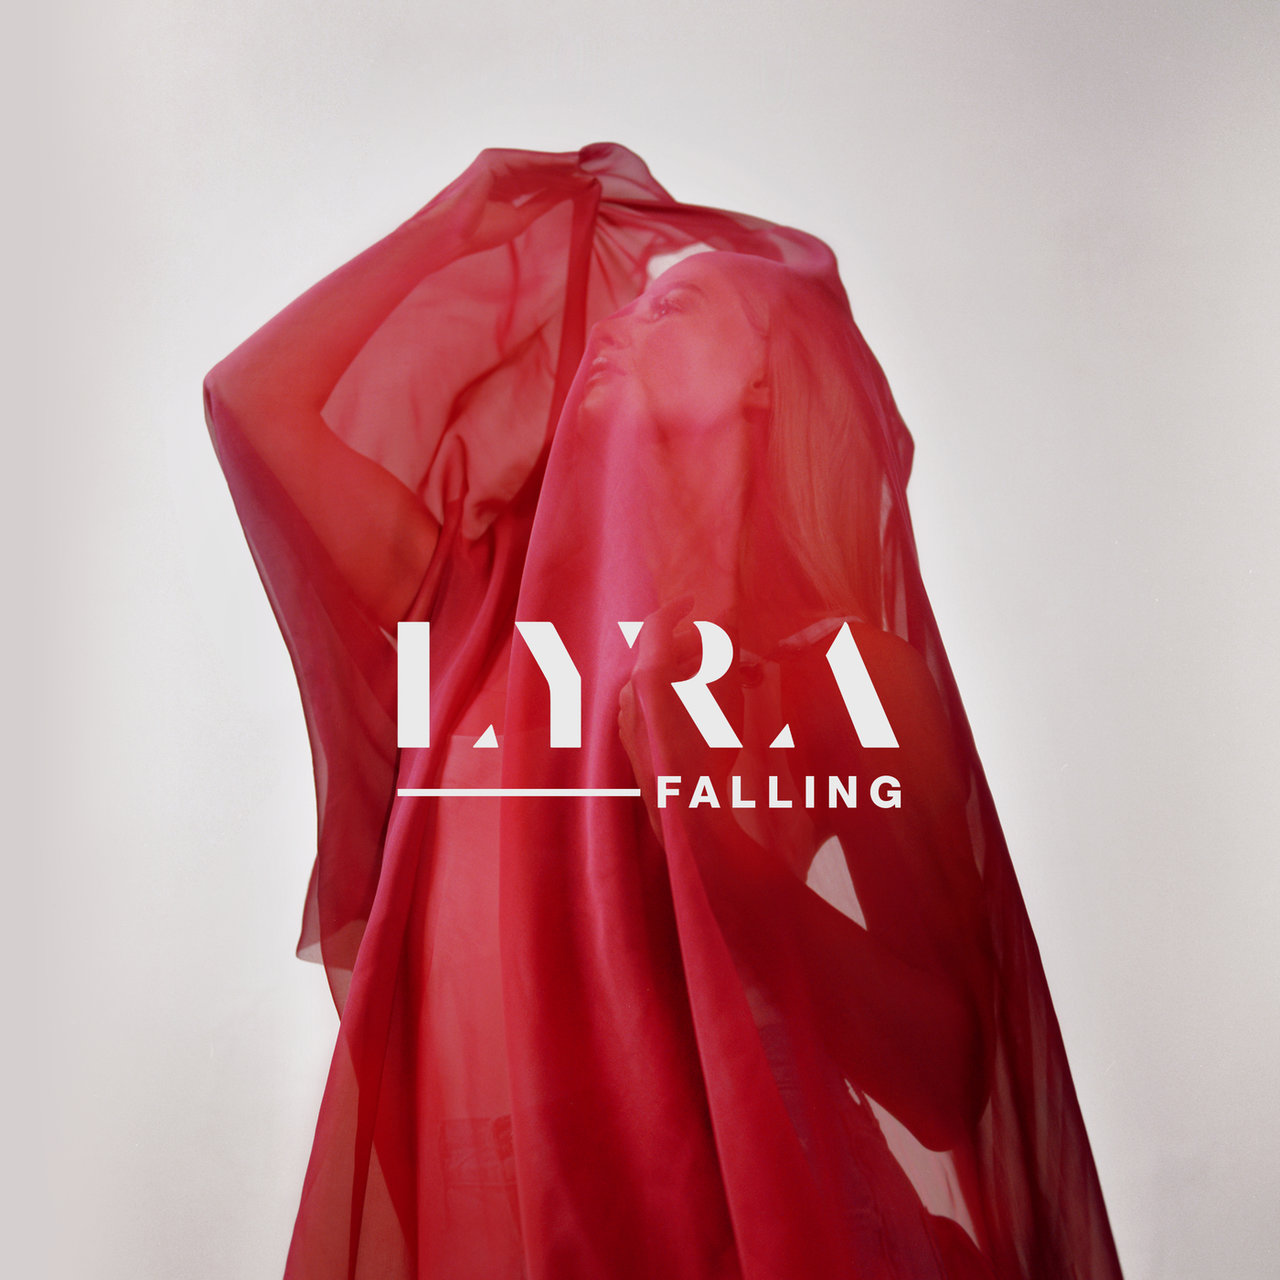 LYRA Falling cover artwork